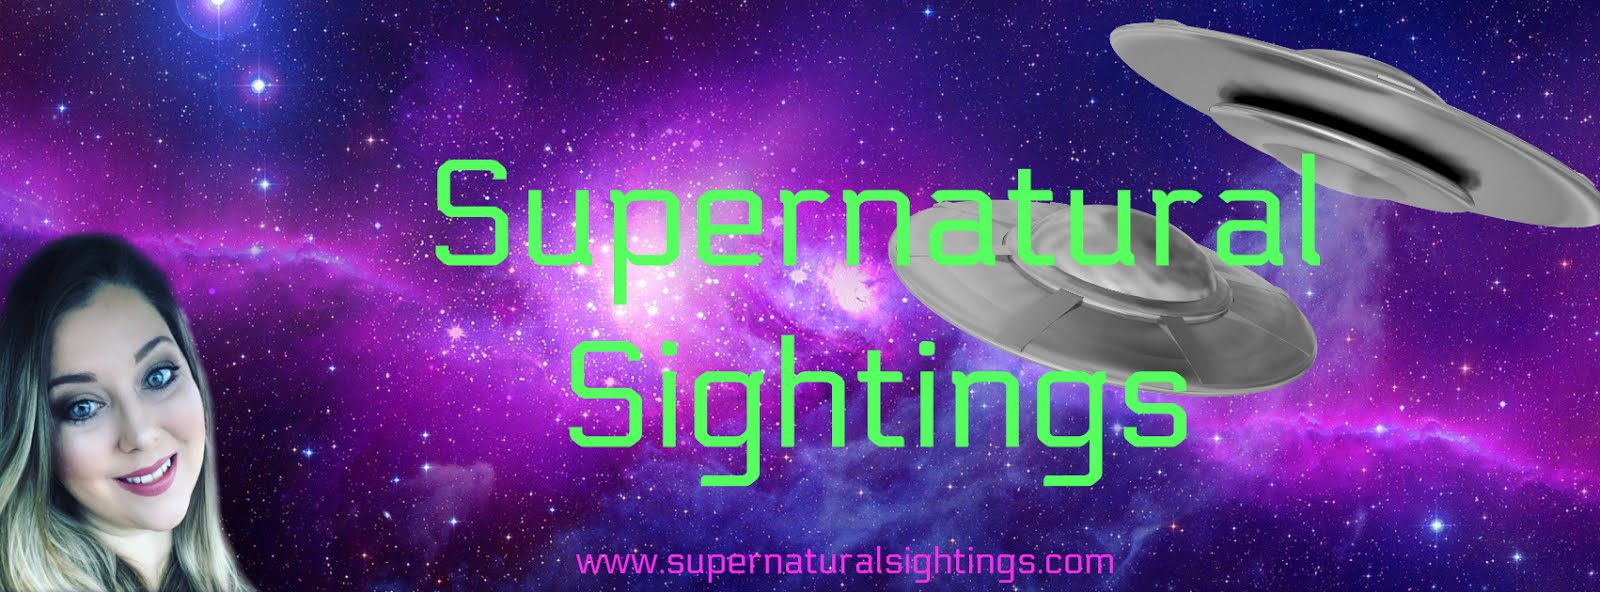 Supernatural Sightings